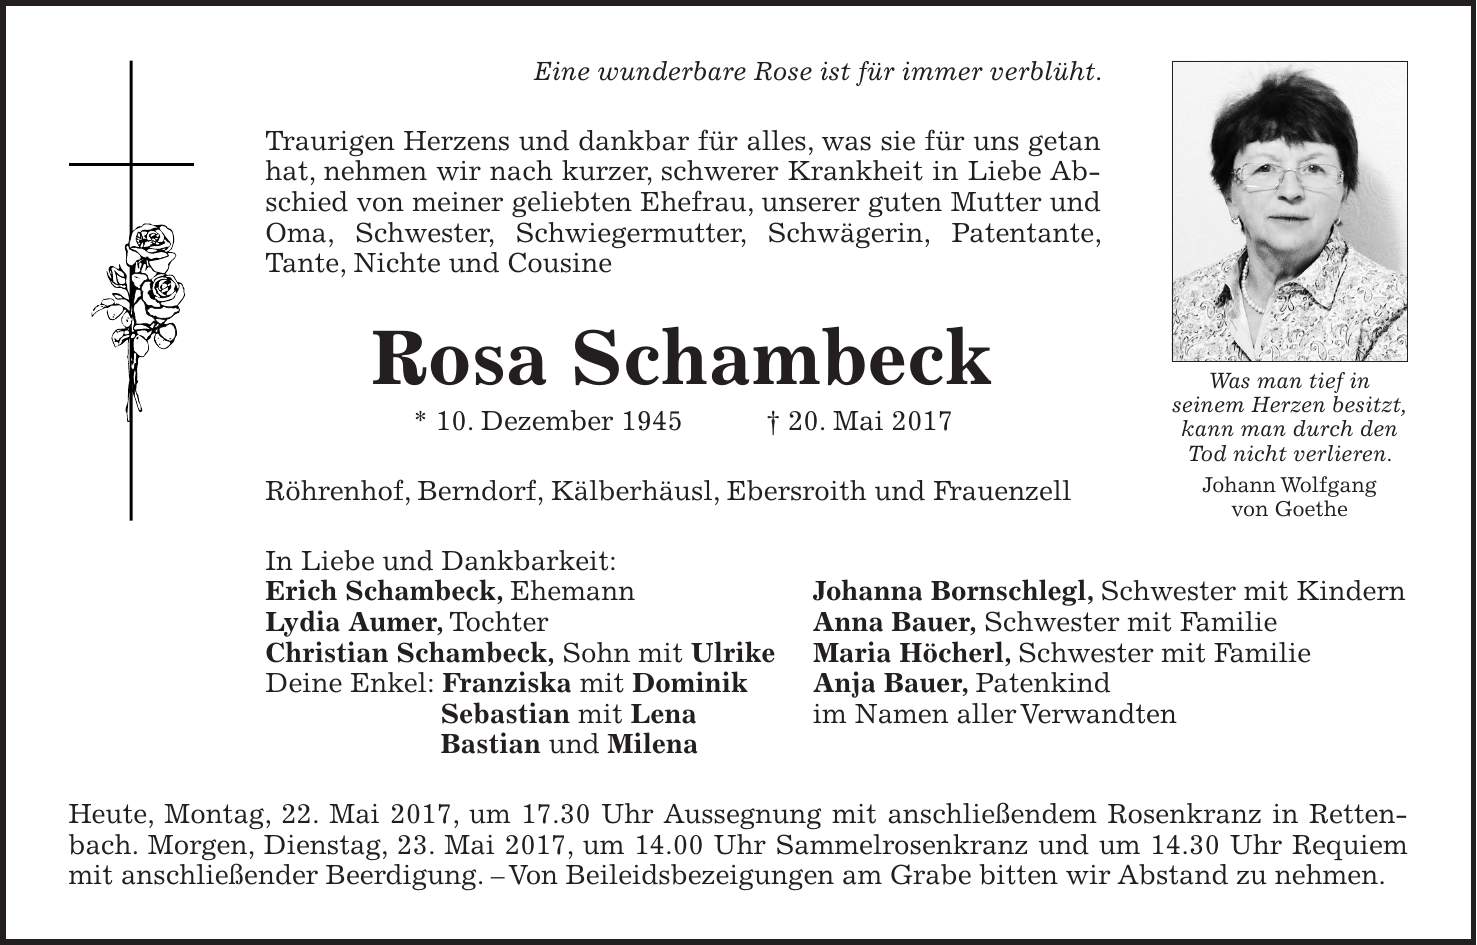 Eine wunderbare Rose ist für immer verblüht. Traurigen Herzens und dankbar für alles, was sie für uns getan hat, nehmen wir nach kurzer, schwerer Krankheit in Liebe Abschied von meiner geliebten Ehefrau, unserer guten Mutter und Oma, Schwester, Schwiegermutter, Schwägerin, Patentante, Tante, Nichte und Cousine Rosa Schambeck * 10. Dezember 1945 + 20. Mai 2017 Röhrenhof, Berndorf, Kälberhäusl, Ebersroith und Frauenzell In Liebe und Dankbarkeit: Erich Schambeck, Ehemann Johanna Bornschlegl, Schwester mit Kindern Lydia Aumer, Tochter Anna Bauer, Schwester mit Familie Christian Schambeck, Sohn mit Ulrike Maria Höcherl, Schwester mit Familie Deine Enkel: Franziska mit Dominik Anja Bauer, Patenkind Sebastian mit Lena im Namen aller Verwandten Bastian und Milena Heute, Montag, 22. Mai 2017, um 17.30 Uhr Aussegnung mit anschließendem Rosenkranz in Rettenbach. Morgen, Dienstag, 23. Mai 2017, um 14.00 Uhr Sammelrosenkranz und um 14.30 Uhr Requiem mit anschließender Beerdigung. - Von Beileidsbezeigungen am Grabe bitten wir Abstand zu nehmen.Was man tief in seinem Herzen besitzt, kann man durch den Tod nicht verlieren. Johann Wolfgang von Goethe